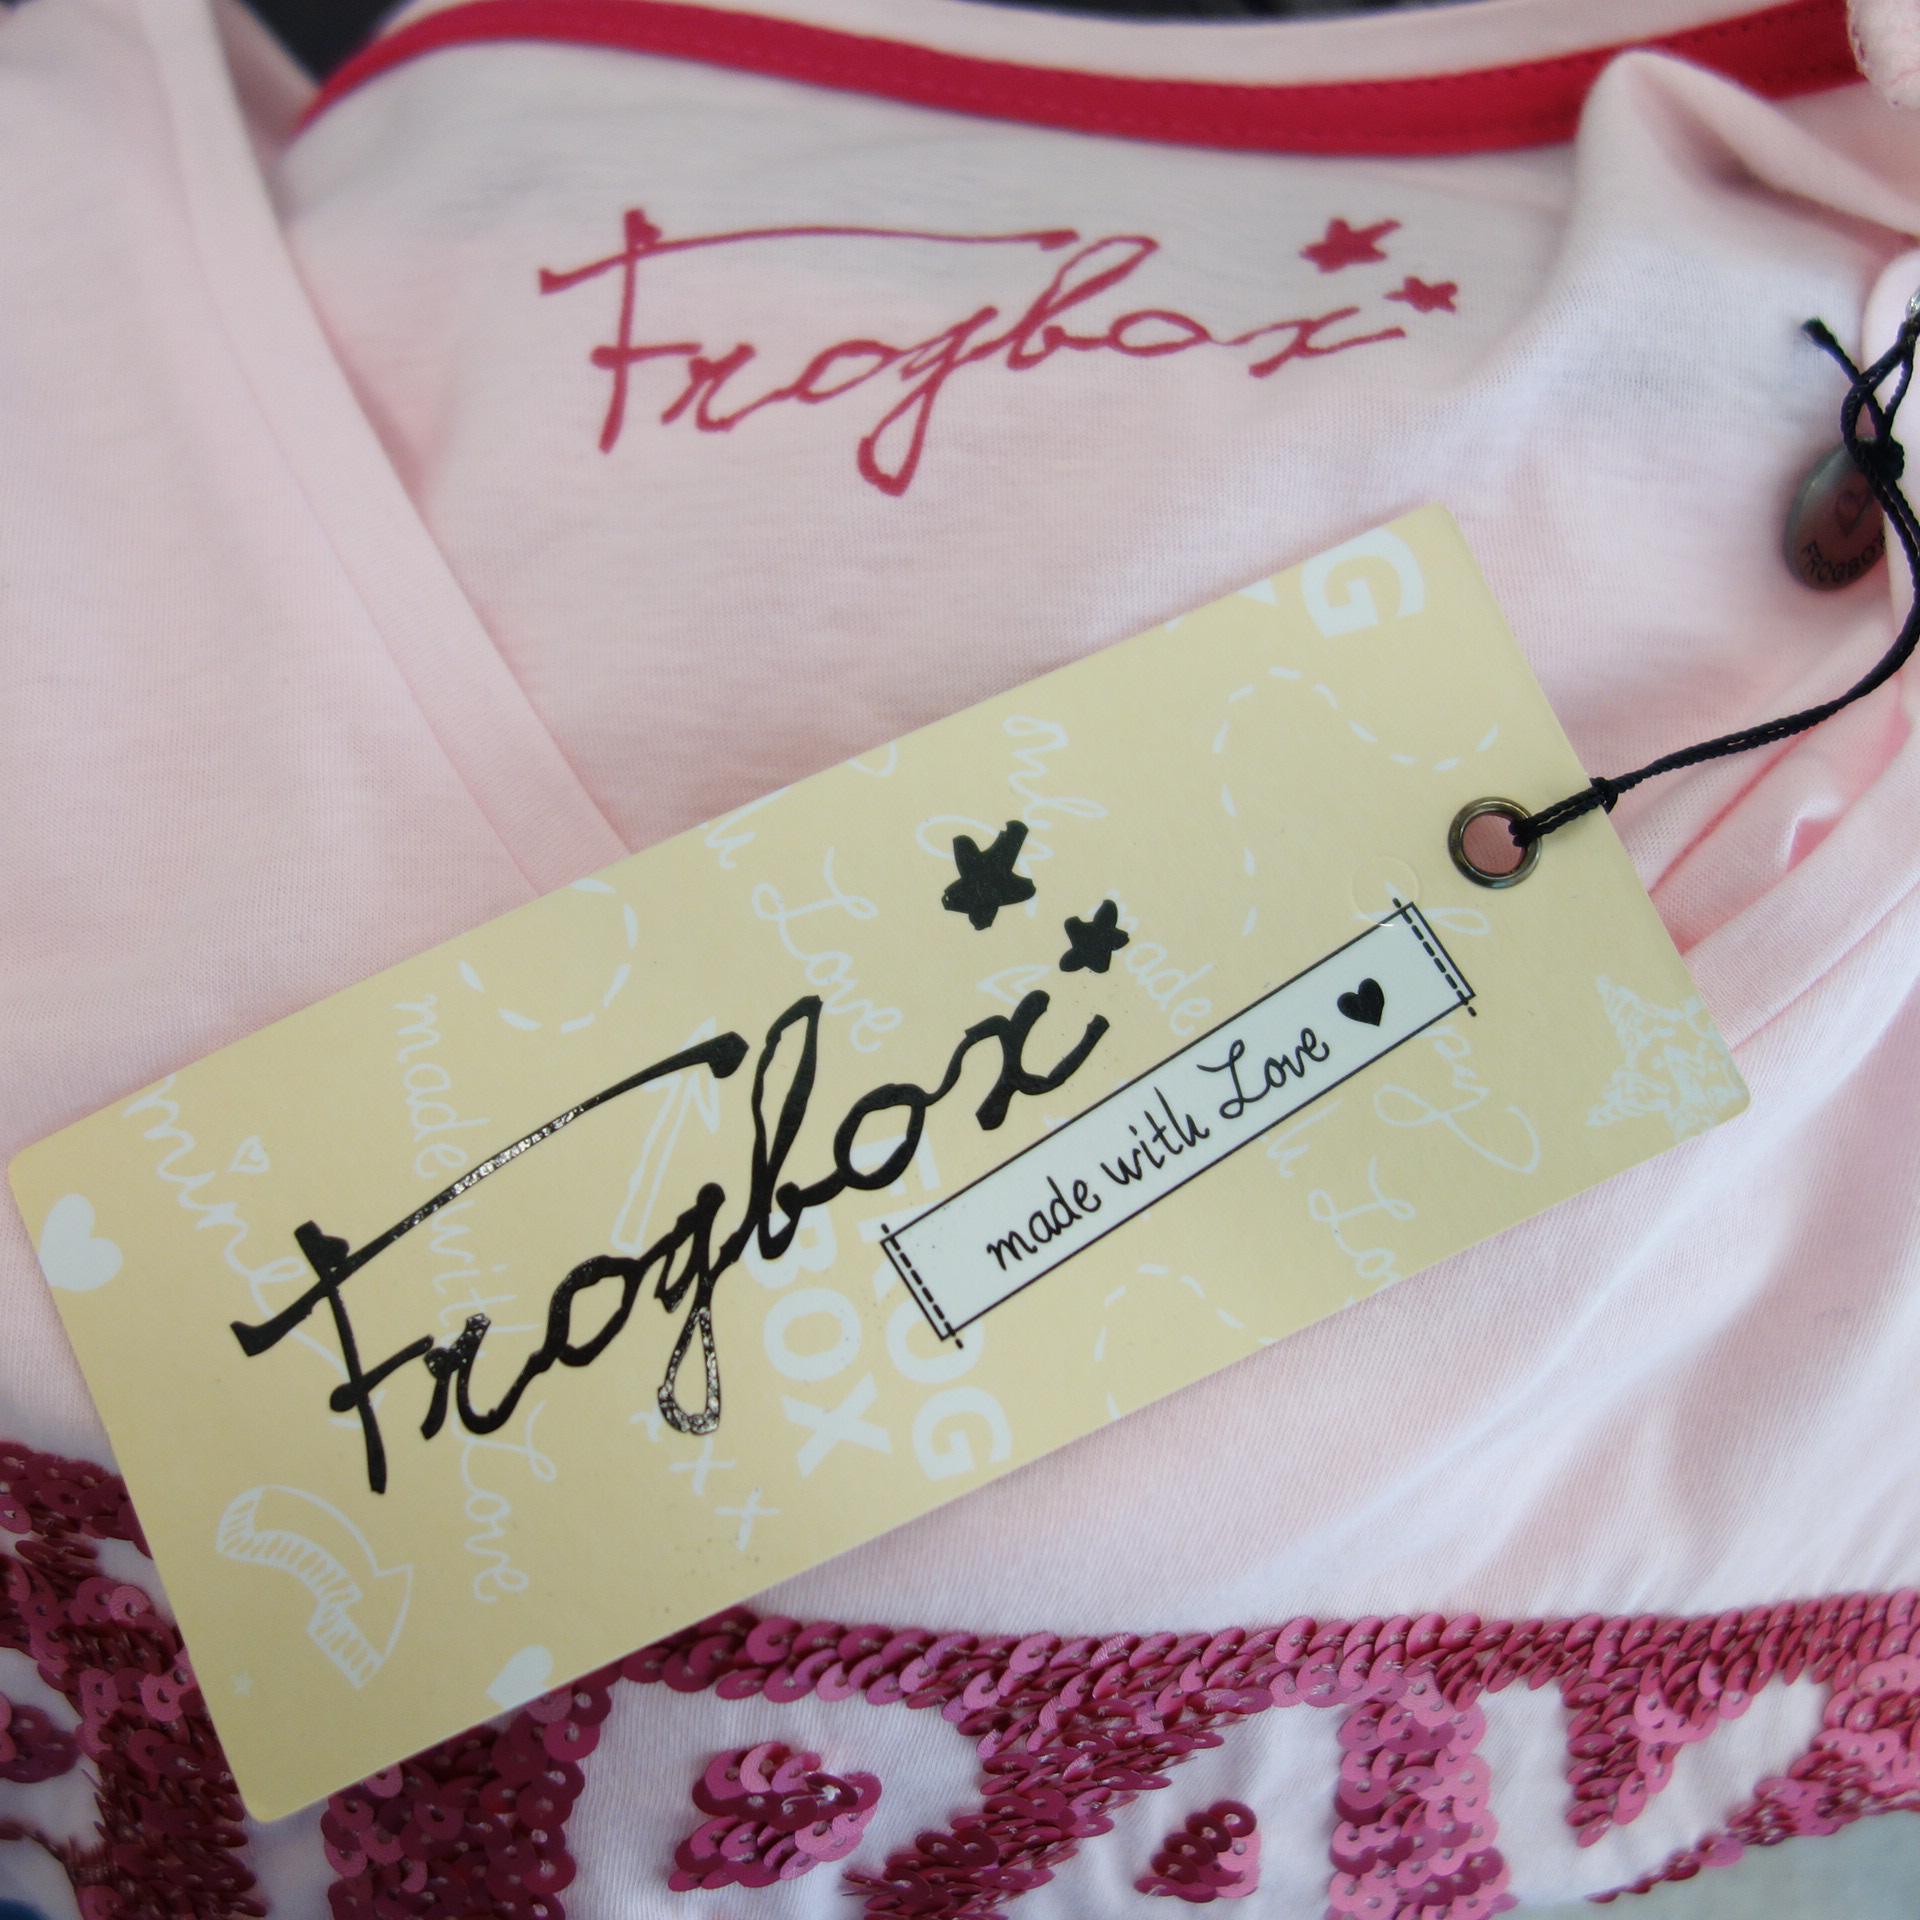 FROGBOX by Princess Damen T-Shirt Shirt Oberteil Rosa 100% Baumwolle Pailletten 